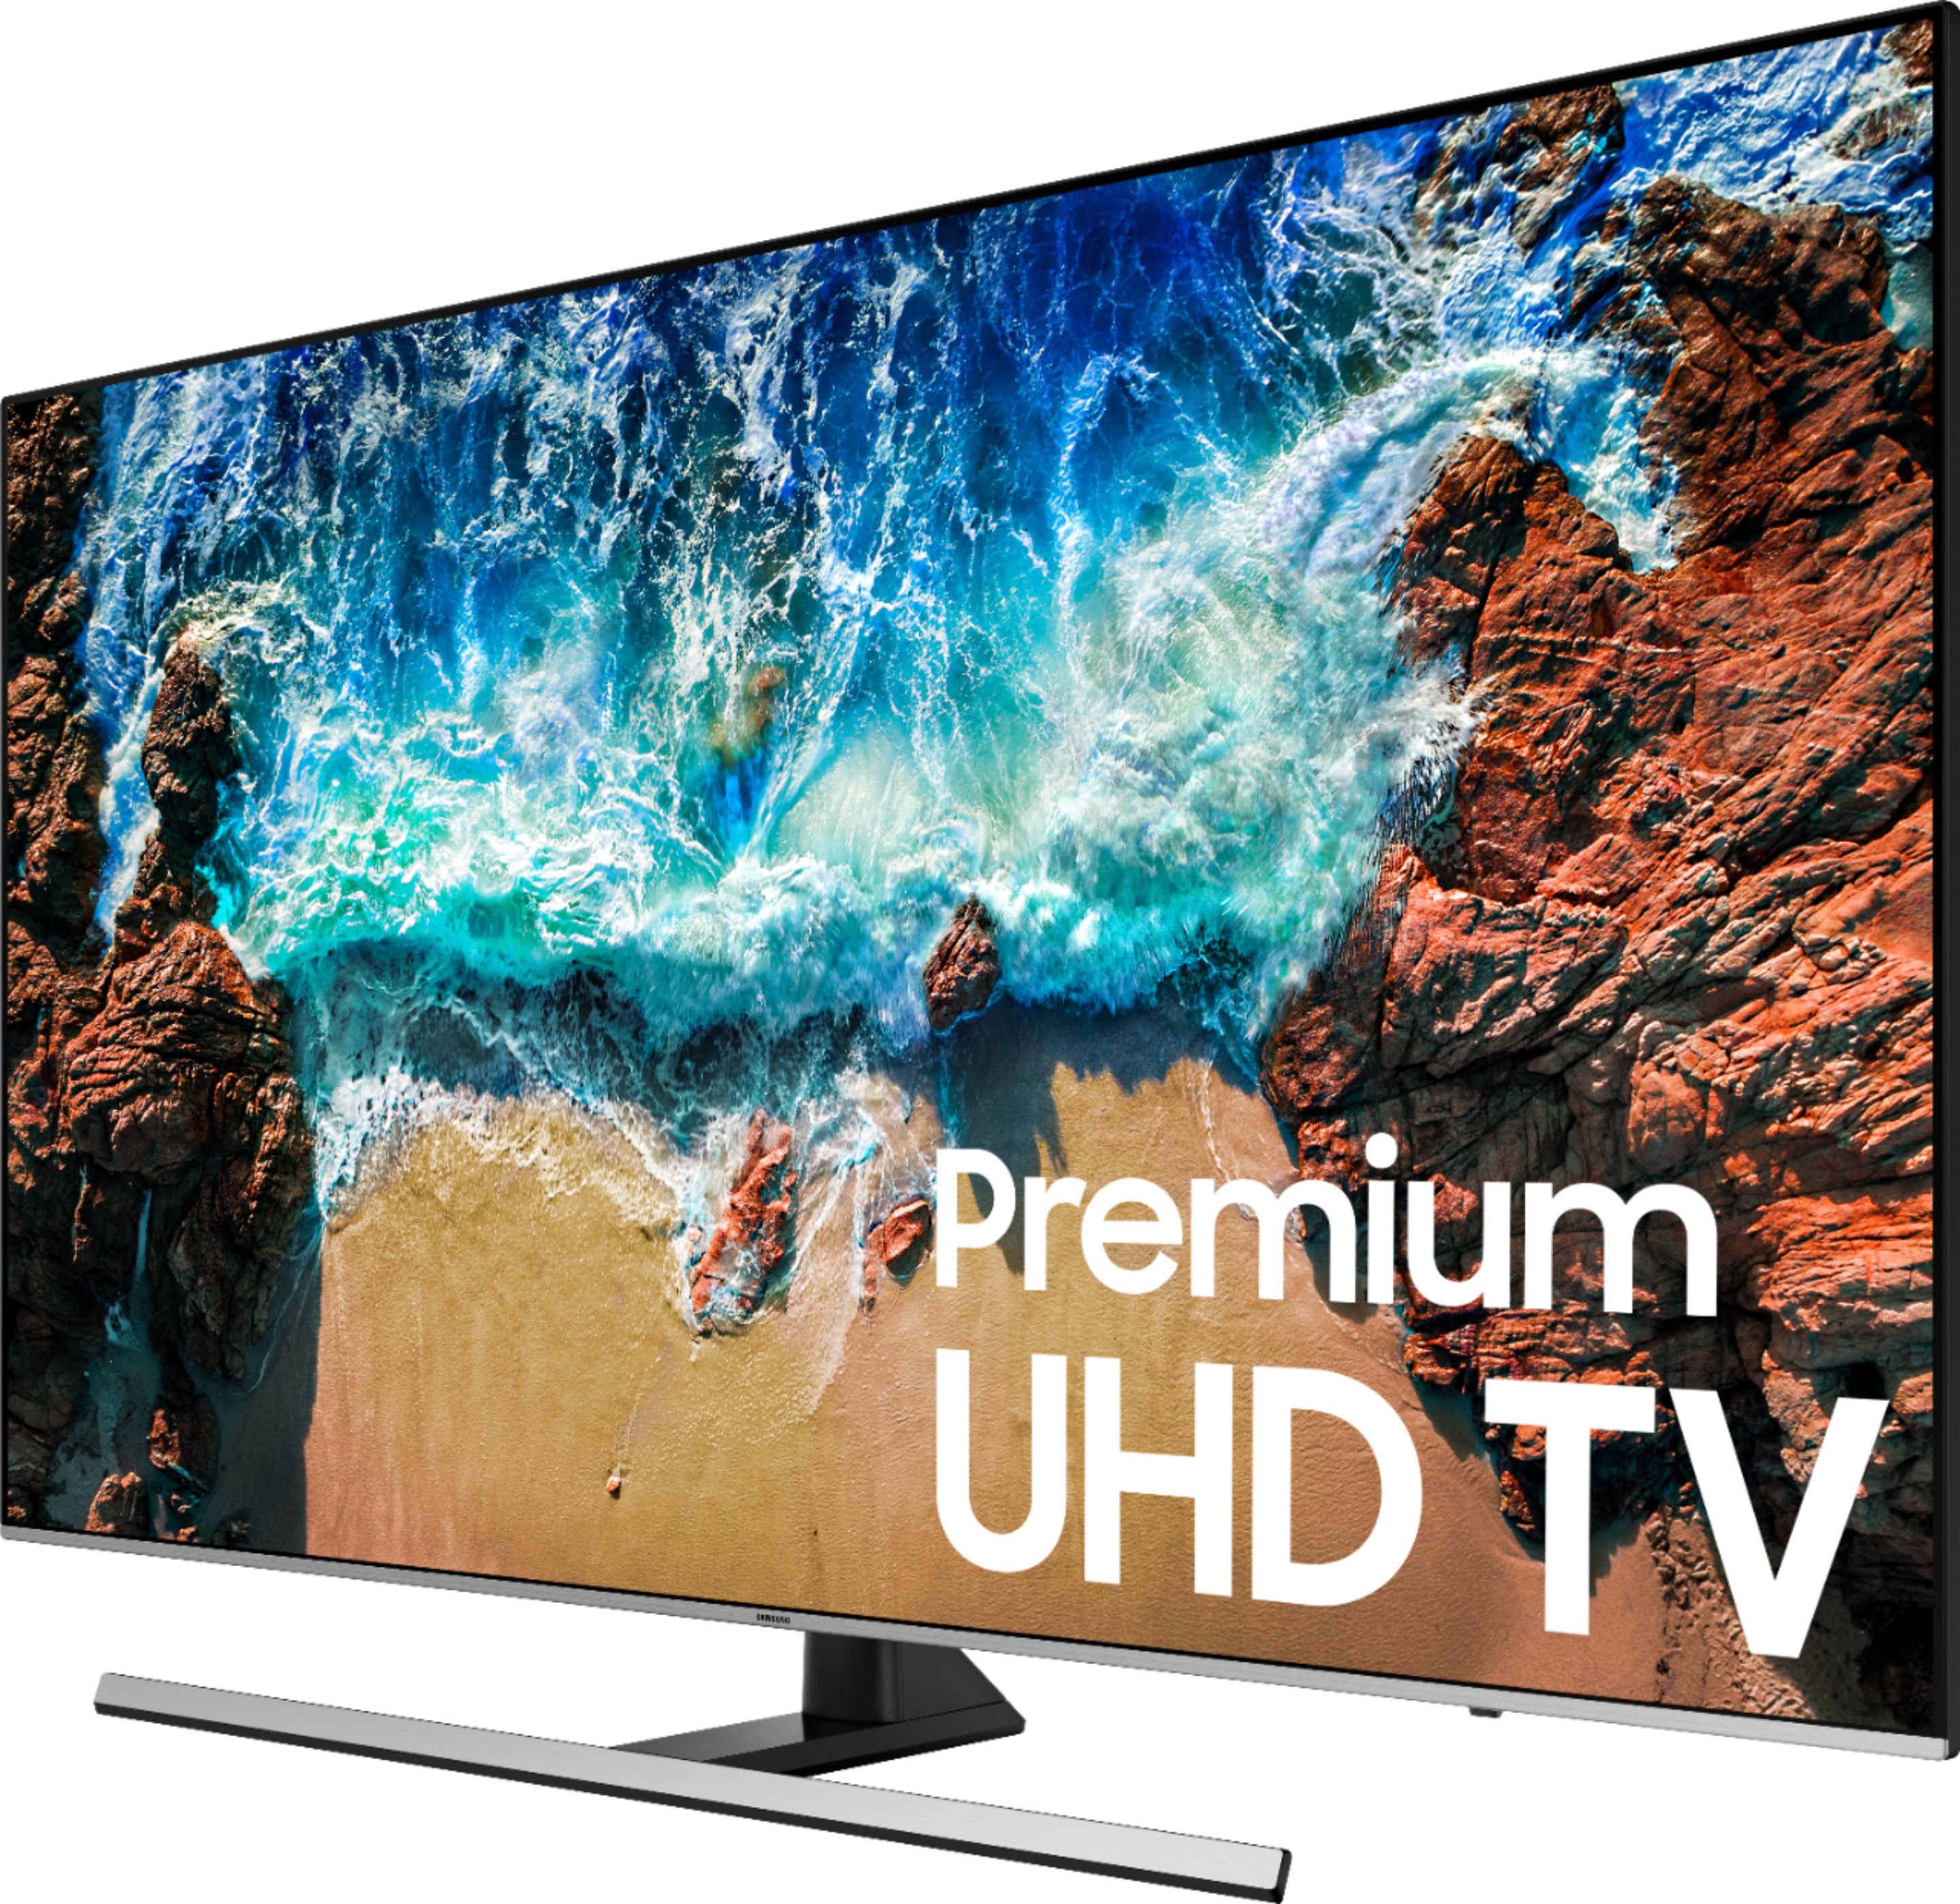 La Smart TV Samsung Incurvé LED 4K UHD 49 pouces à prix cassé pour le Black  Friday